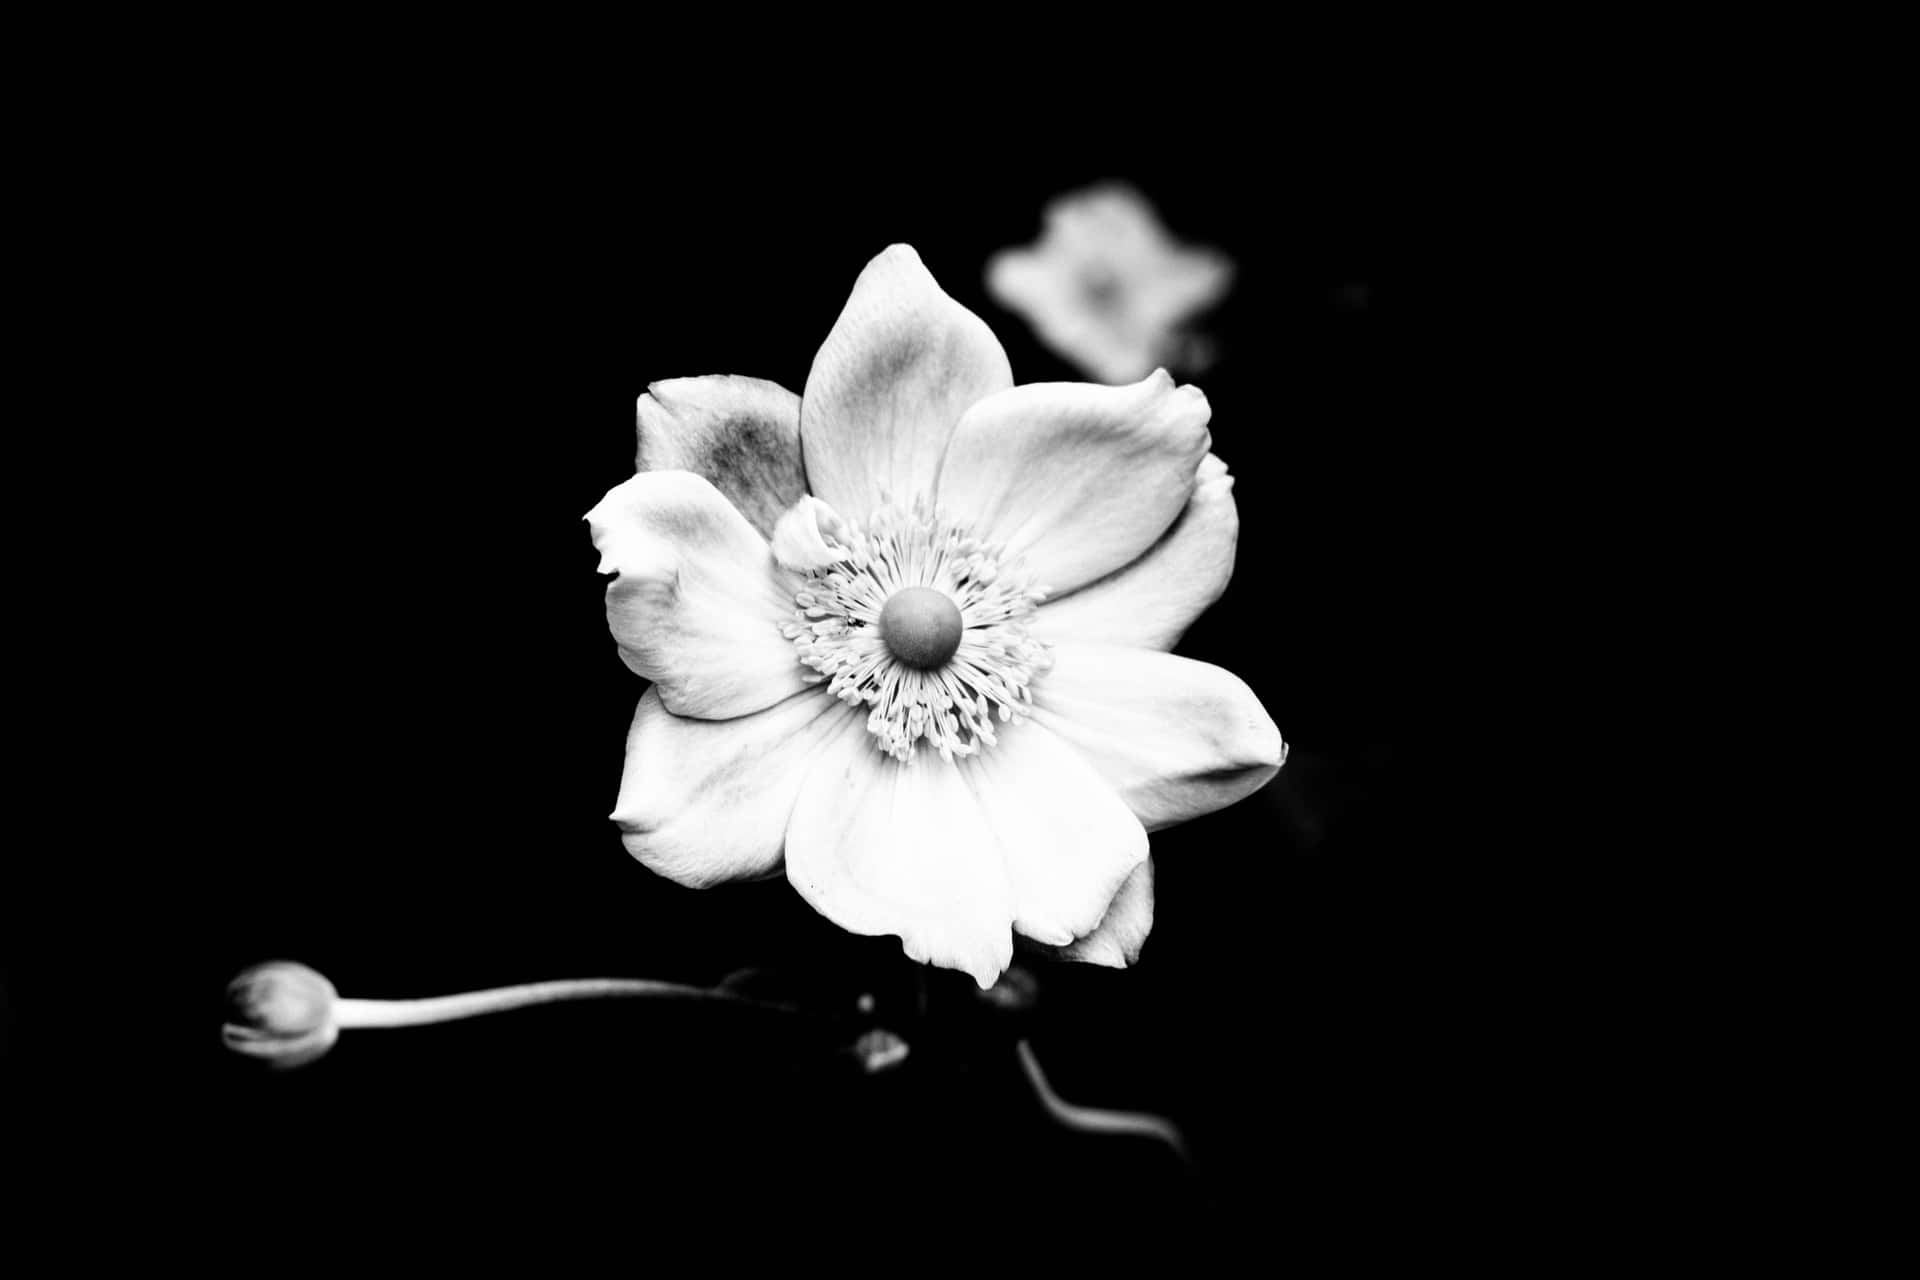 Eineschwarz-weiße Blume Posiert Delikat Vor Einem Leeren Hintergrund.